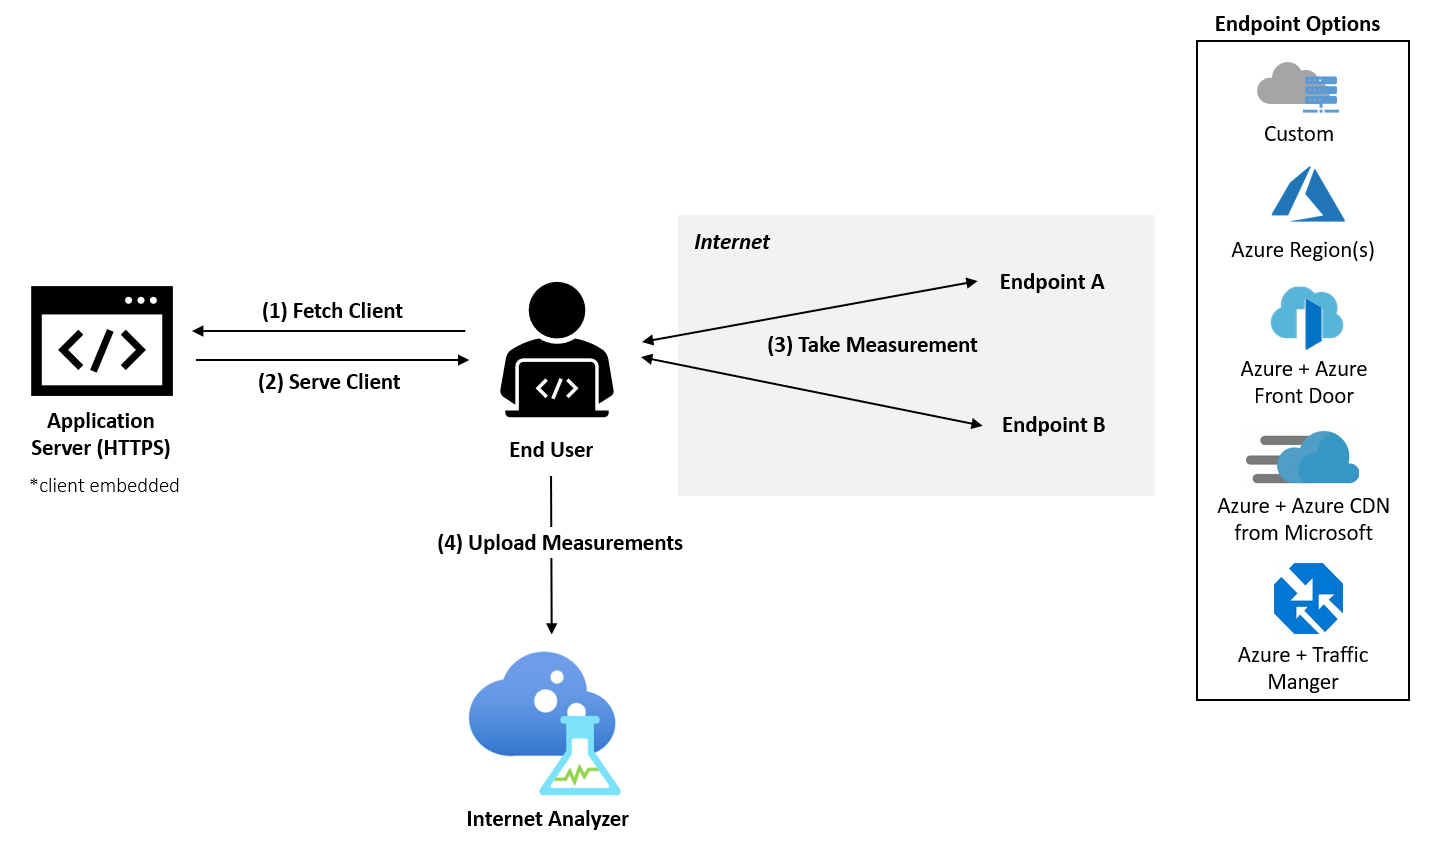 关系图显示了一个最终用户通过几个选项连接到已嵌入客户端的应用服务器和 Internet 上的两个终结点。用户已将度量值上传到 Internet 分析器。